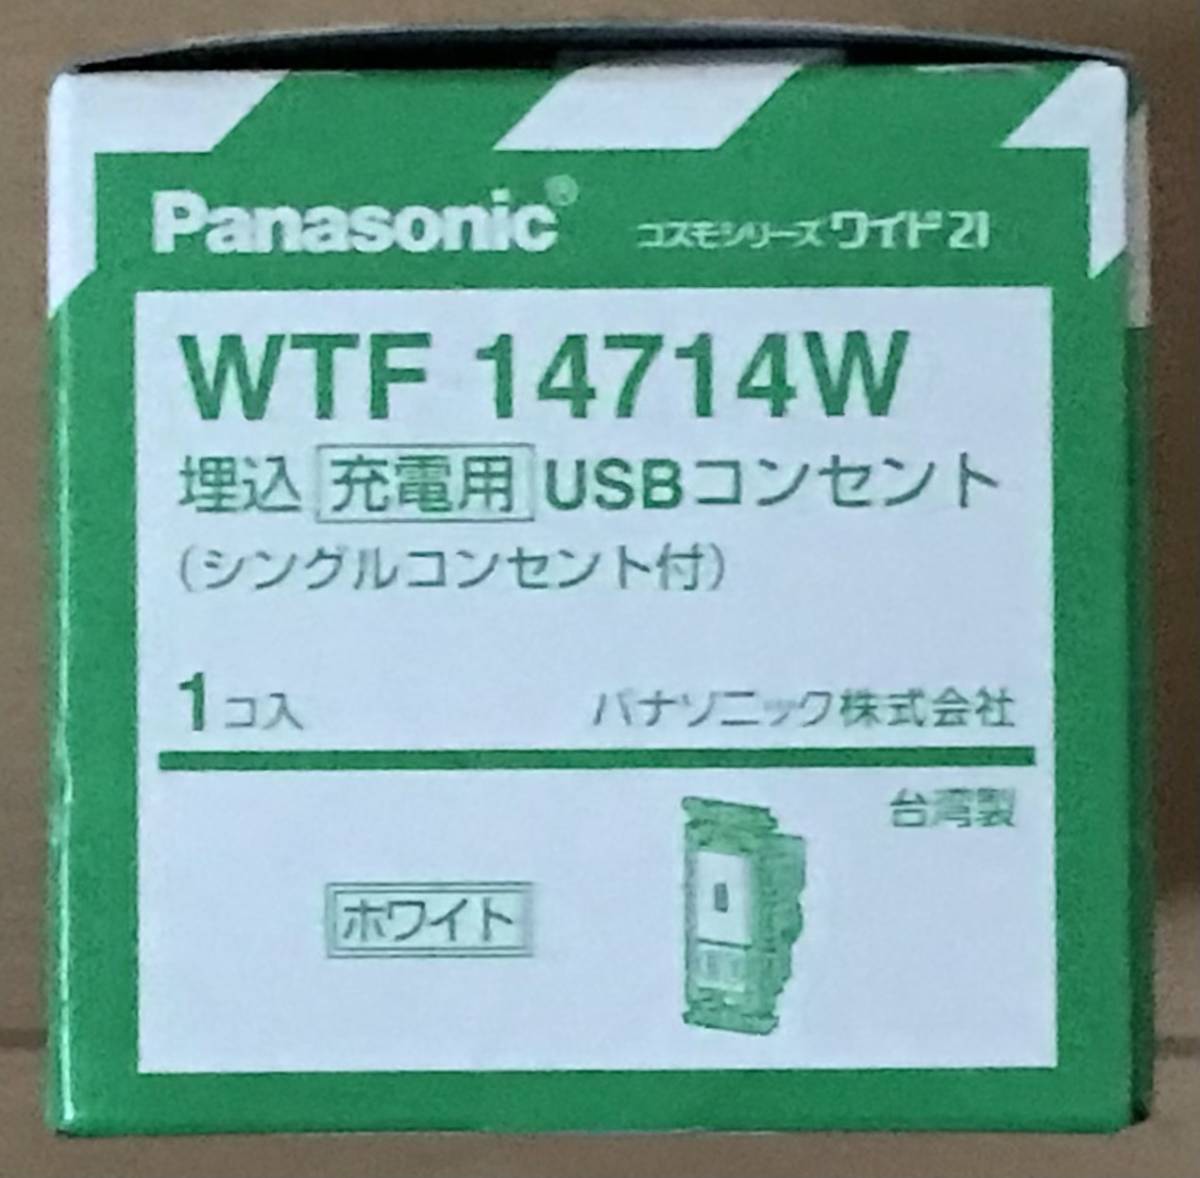 パナソニック WTF14714W 埋め込み充電用USBコンセント シングルコンセント付 ホワイト 最新アイテム